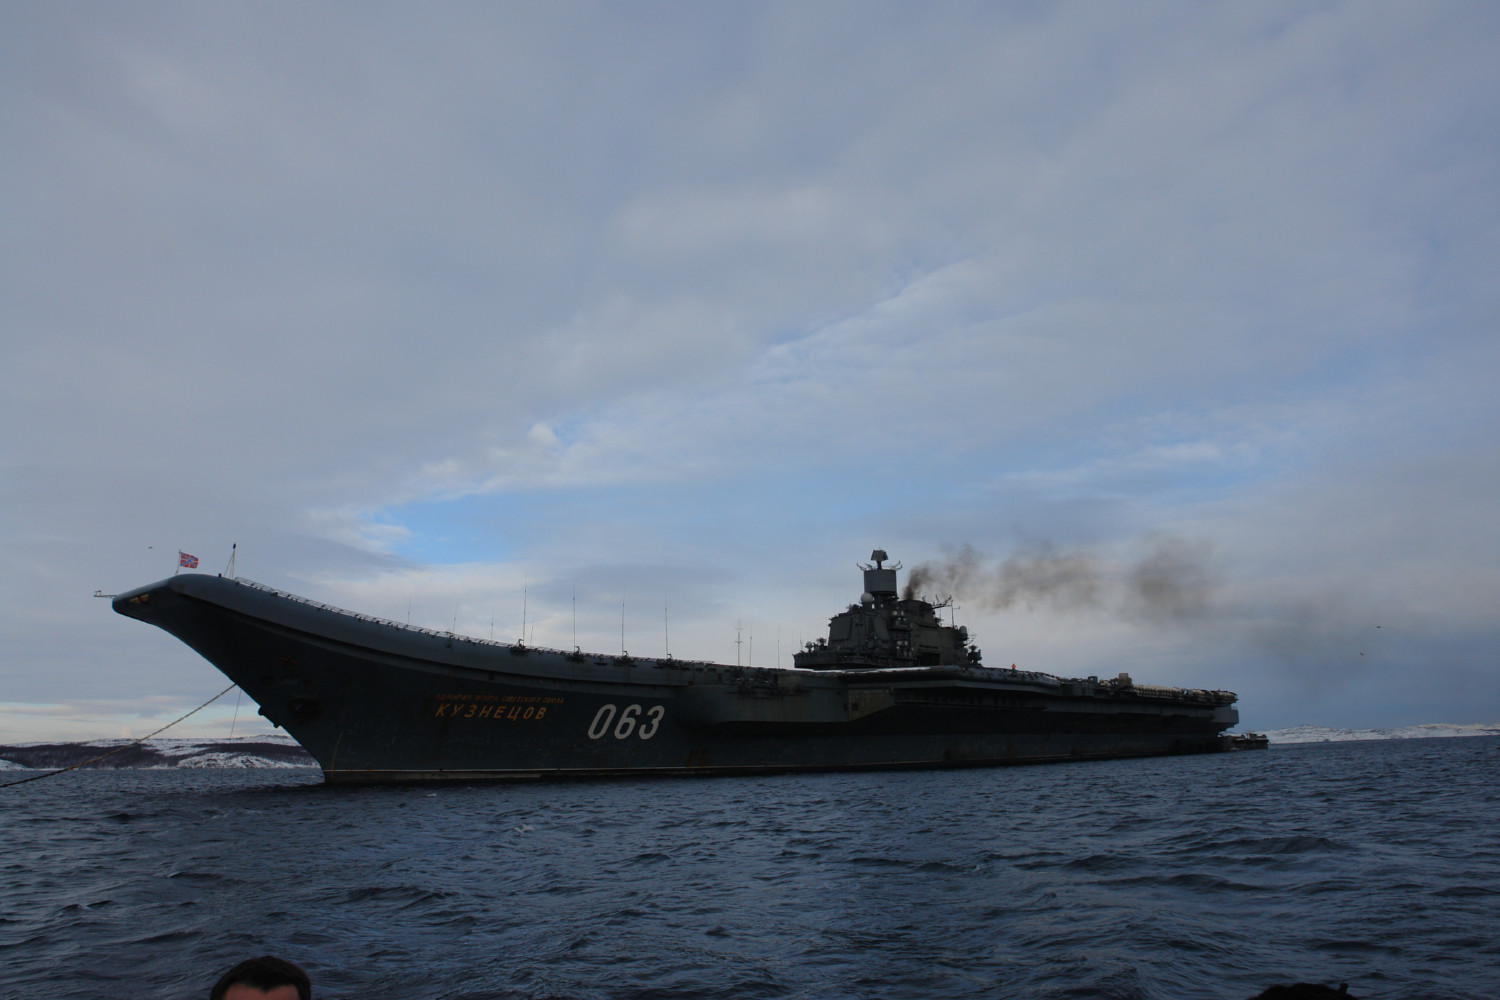 空母アドミラル クズネツォフ帰港 09年3月2日 N G クズネツォフ記念 ウリヤノフスク赤旗 親衛ロシア海軍情報管理局